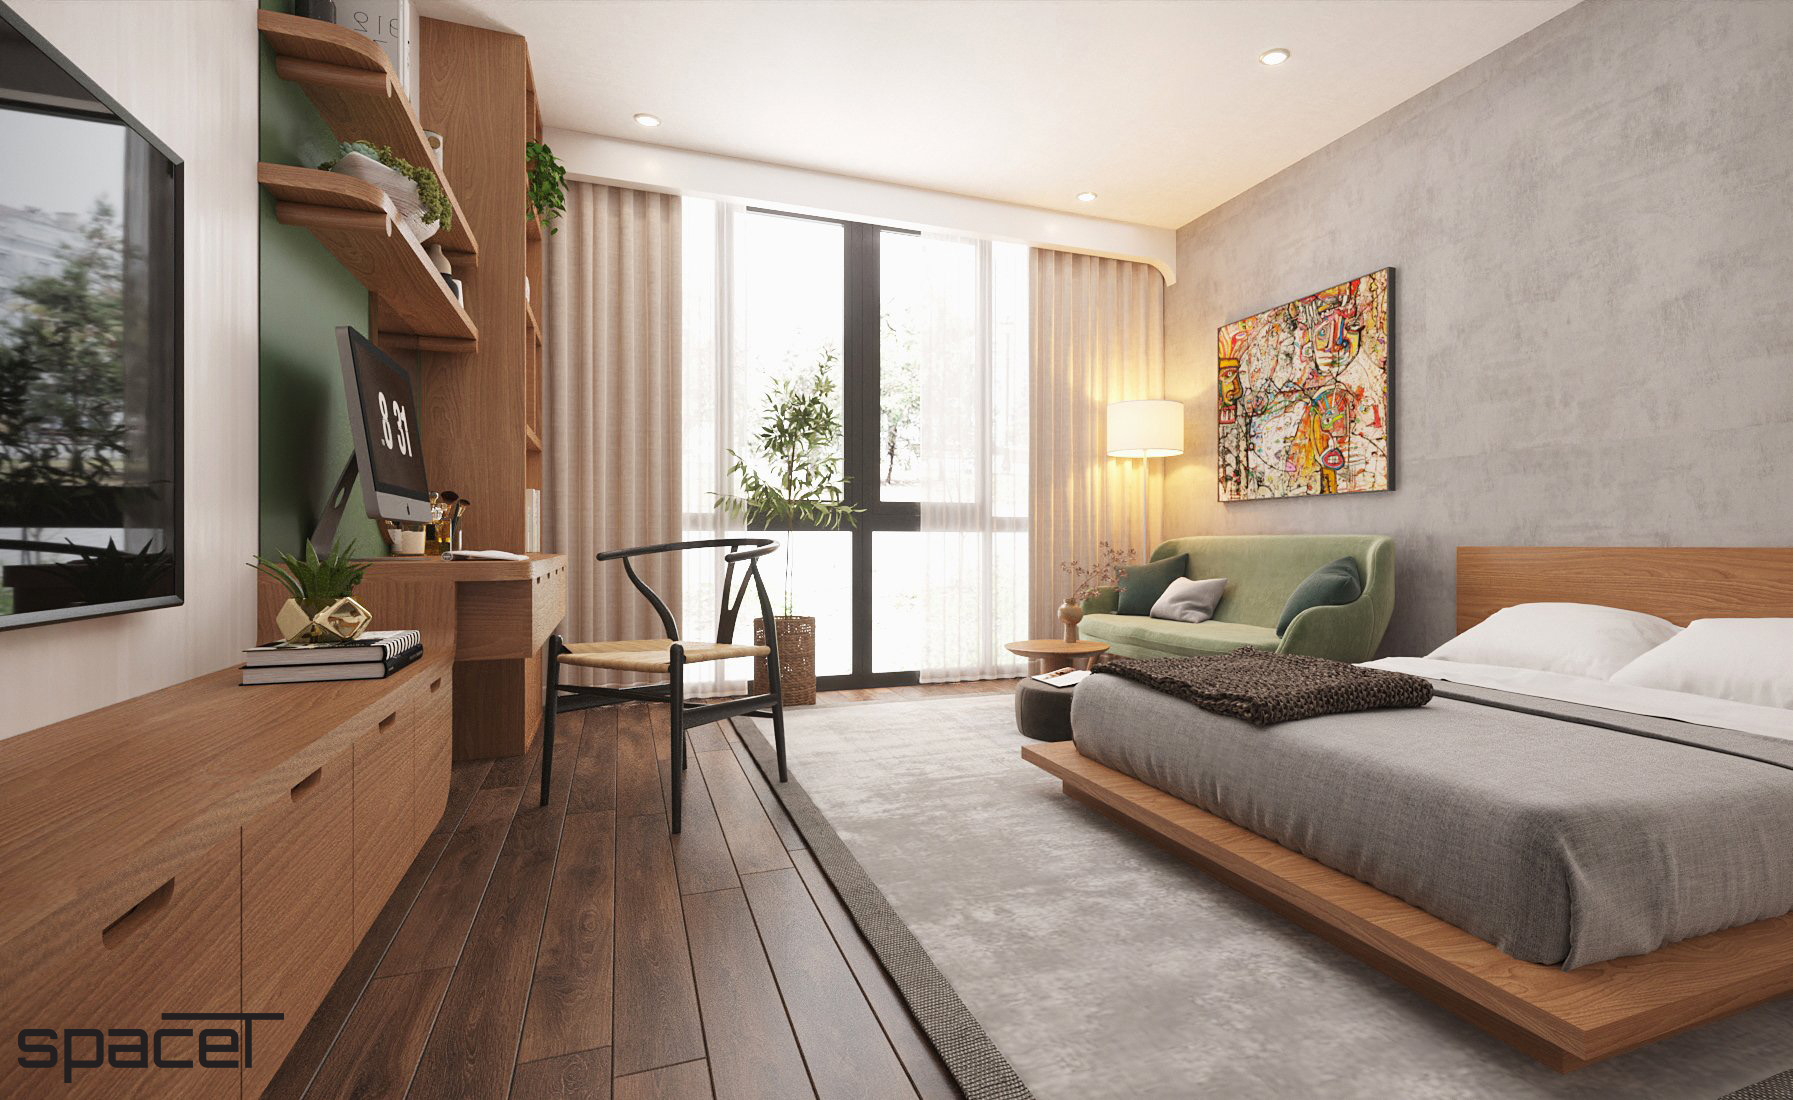 Phòng ngủ, phong cách Hiện đại Modern, thiết kế concept nội thất, nhà phố Quận 11